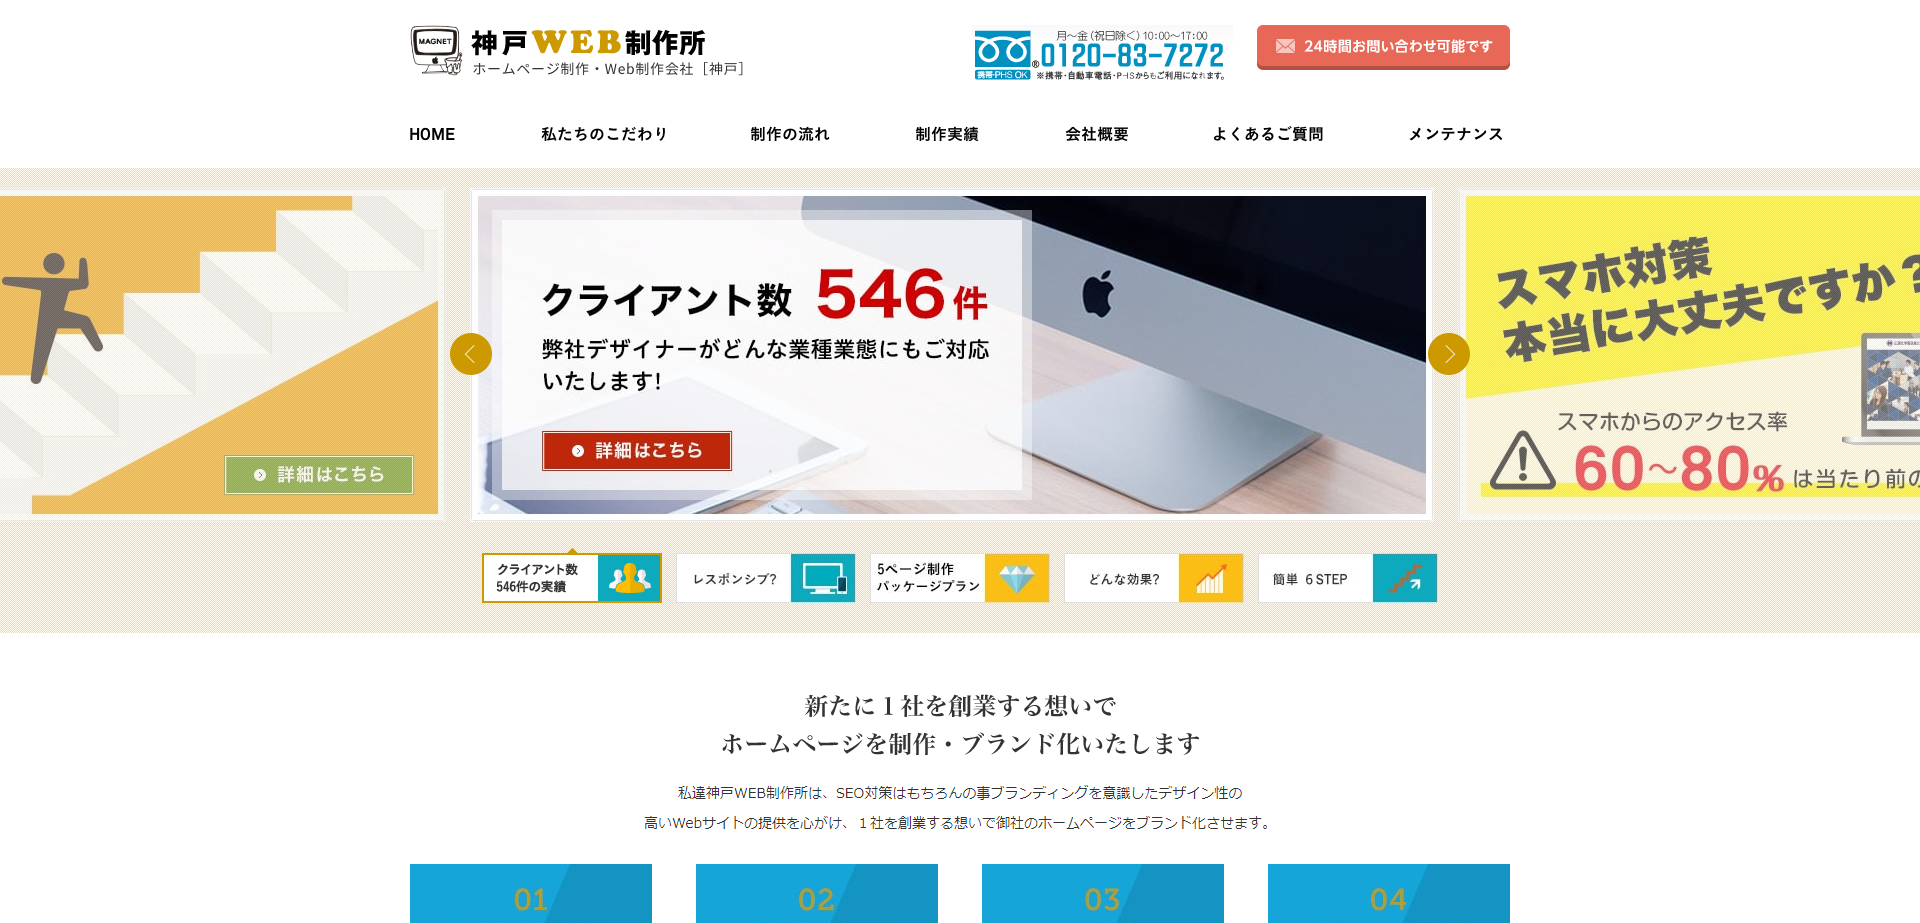 株式会社マグネットの神戸WEB制作所サービス